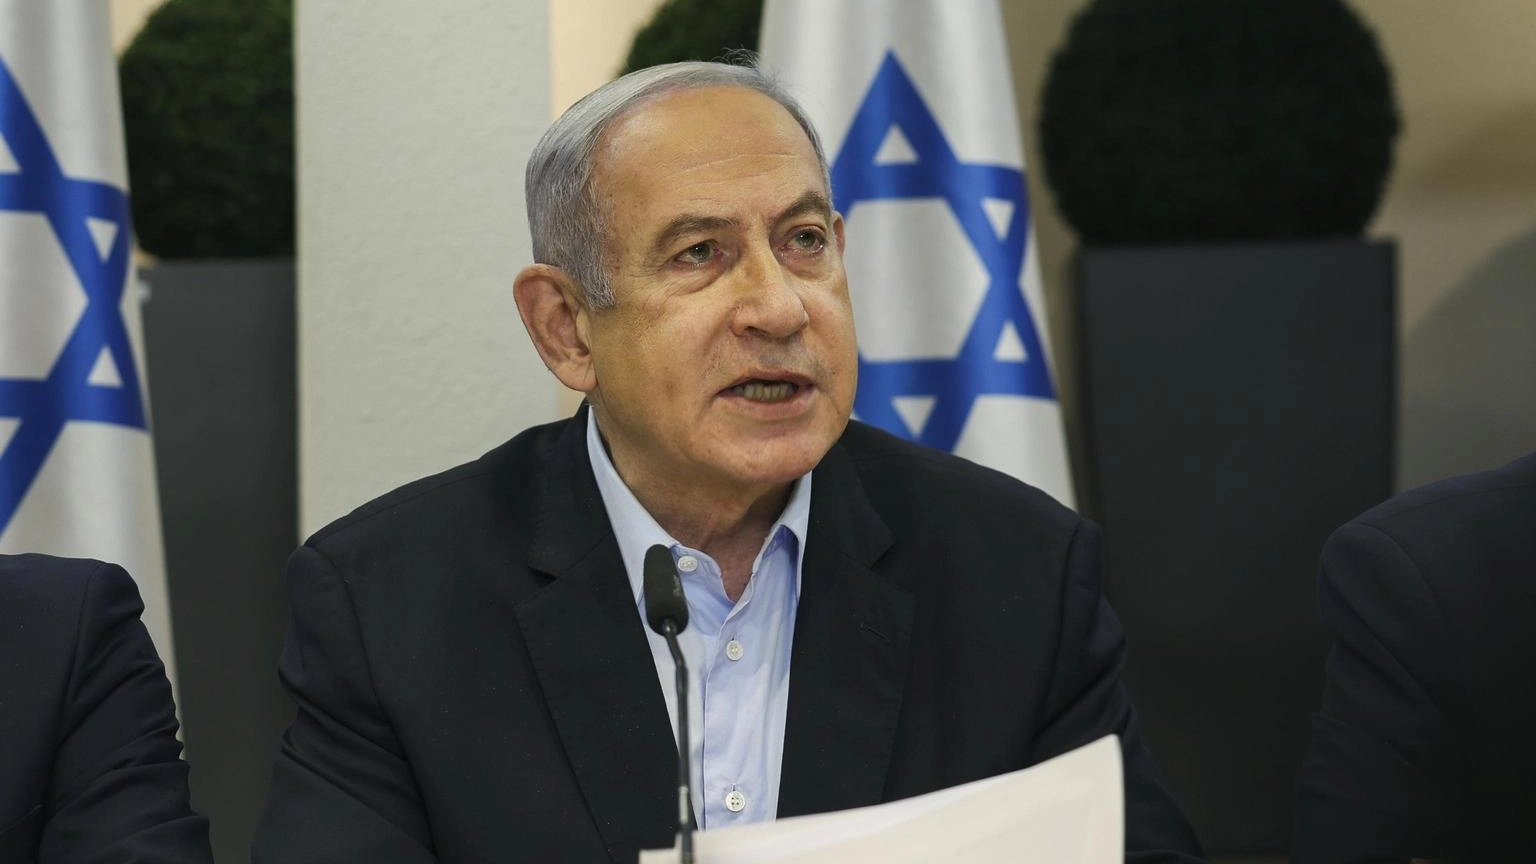 Ufficio Netanyahu, 'incontro Parigi costruttivo, ancora divari'